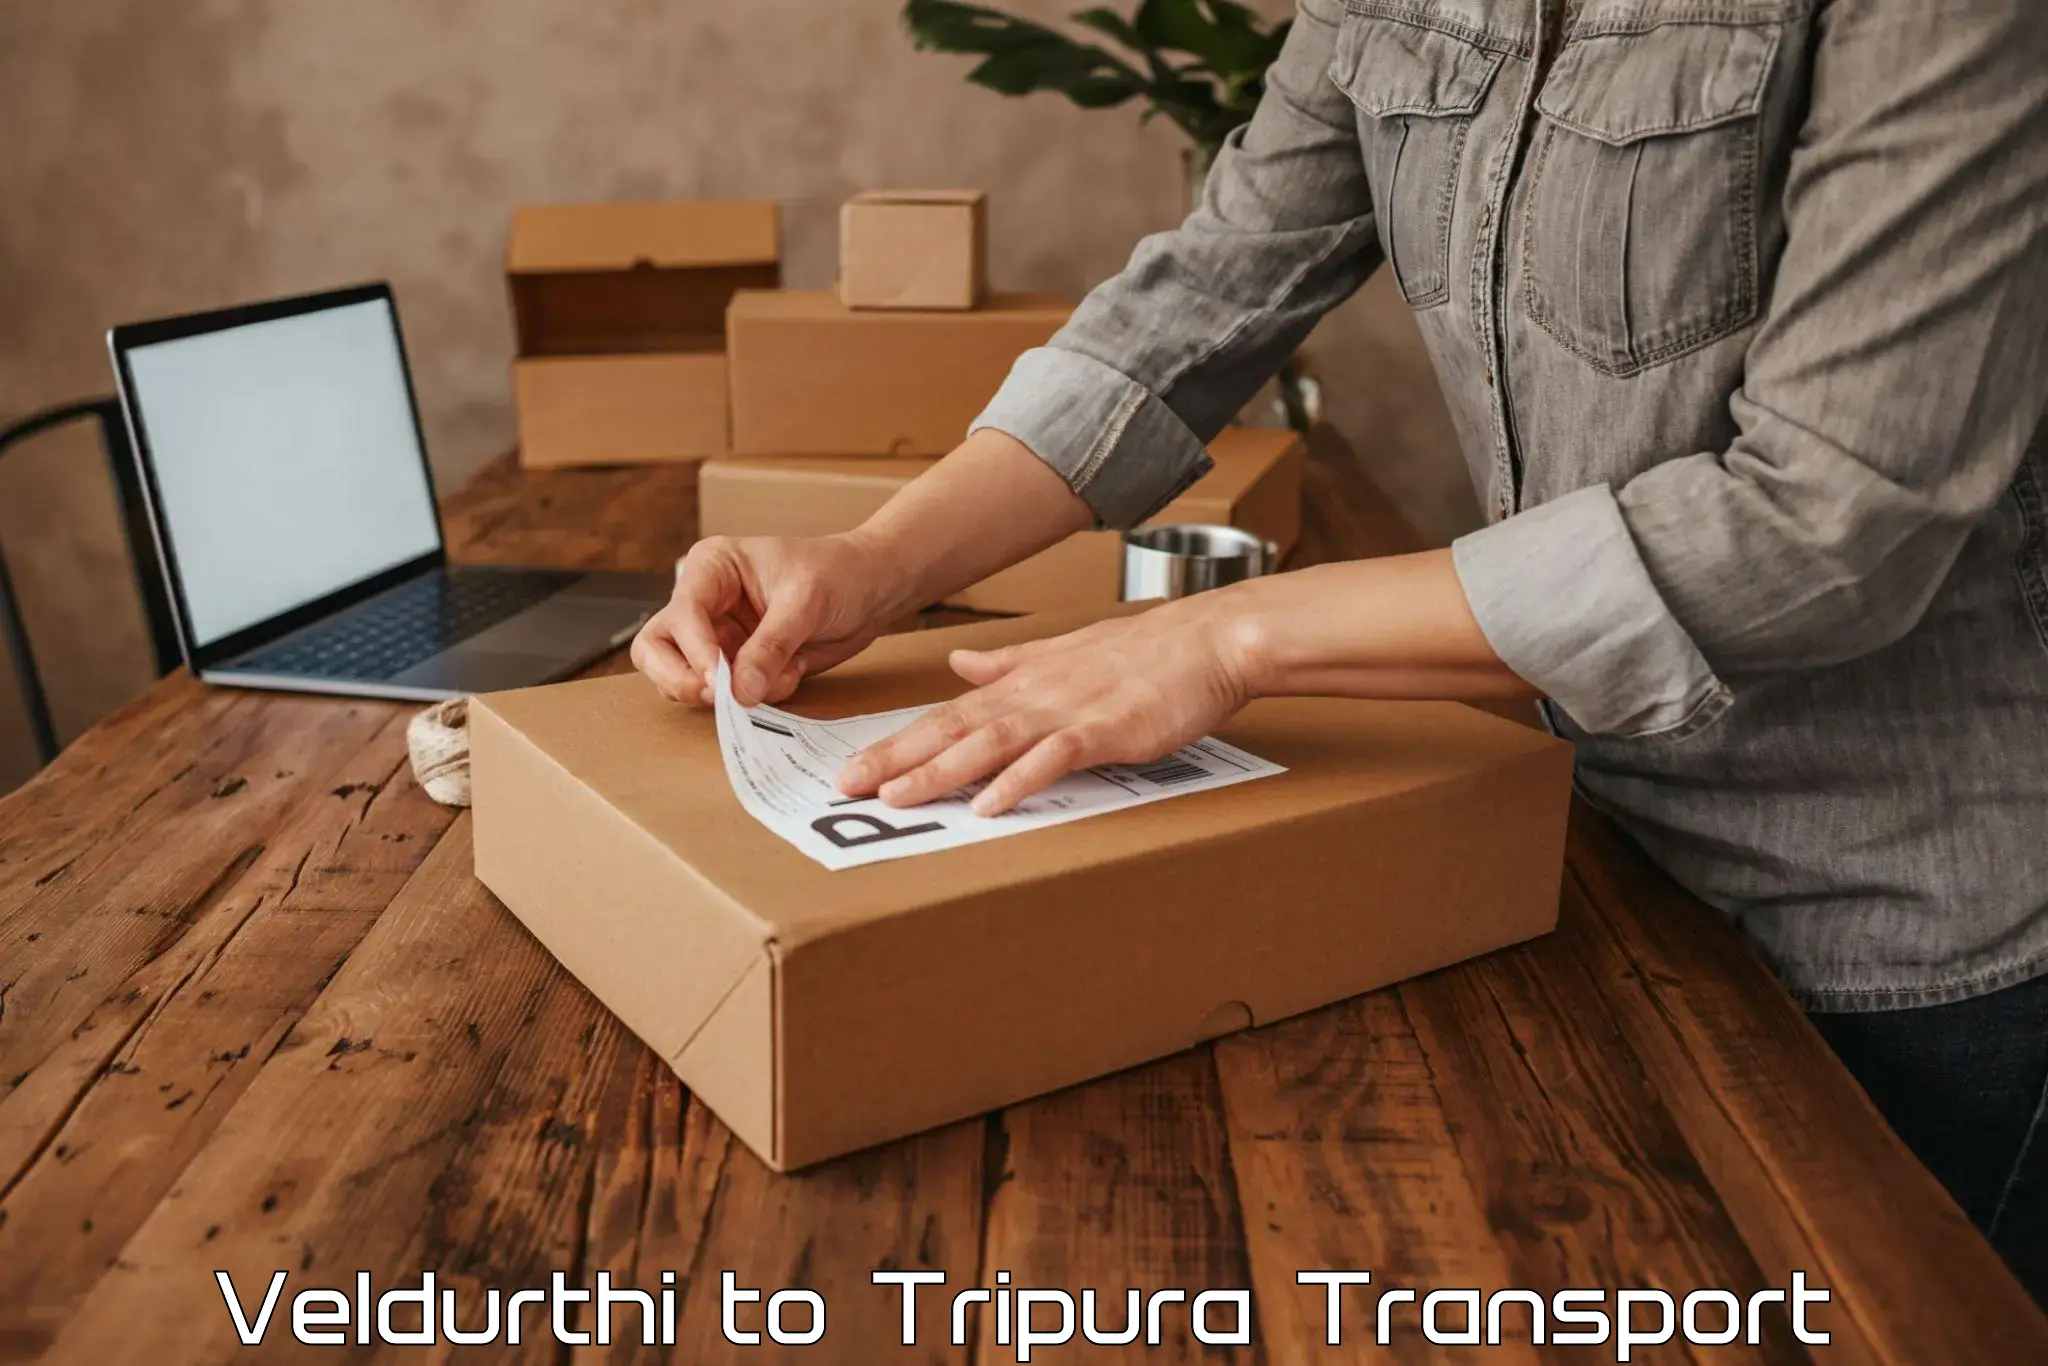 Truck transport companies in India Veldurthi to Tripura